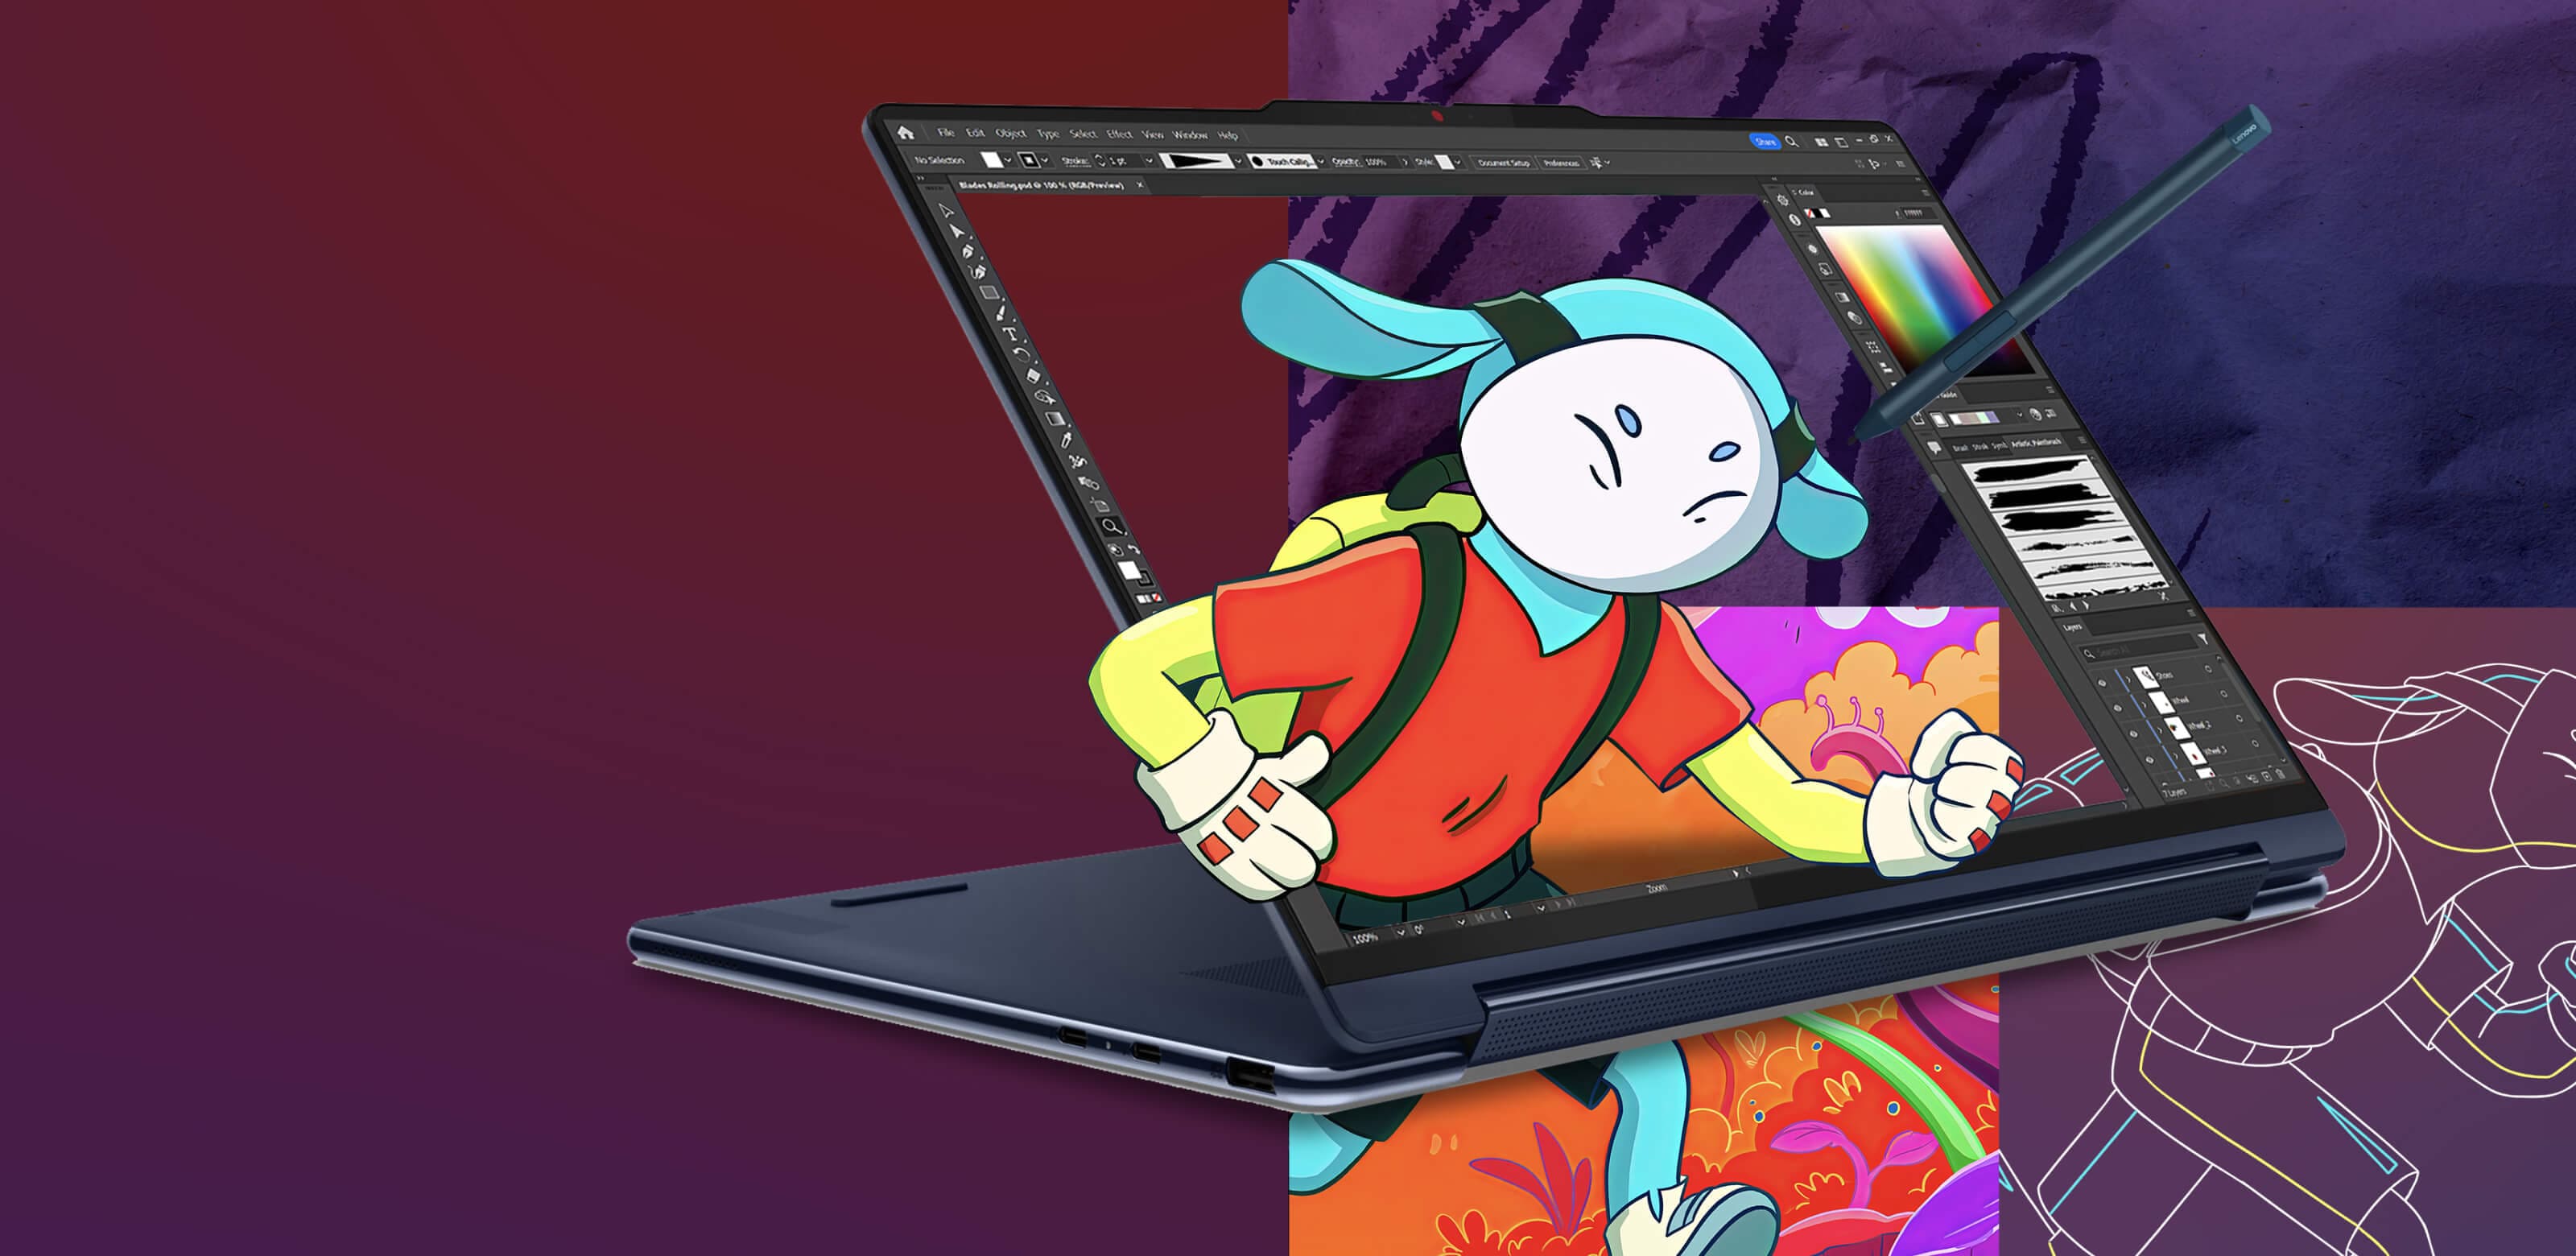 Ноутбук Lenovo Yoga в режимі консолі, на екрані якого відображається програма для редагування зображень із анімаційним персонажем, що виривається з екрана.